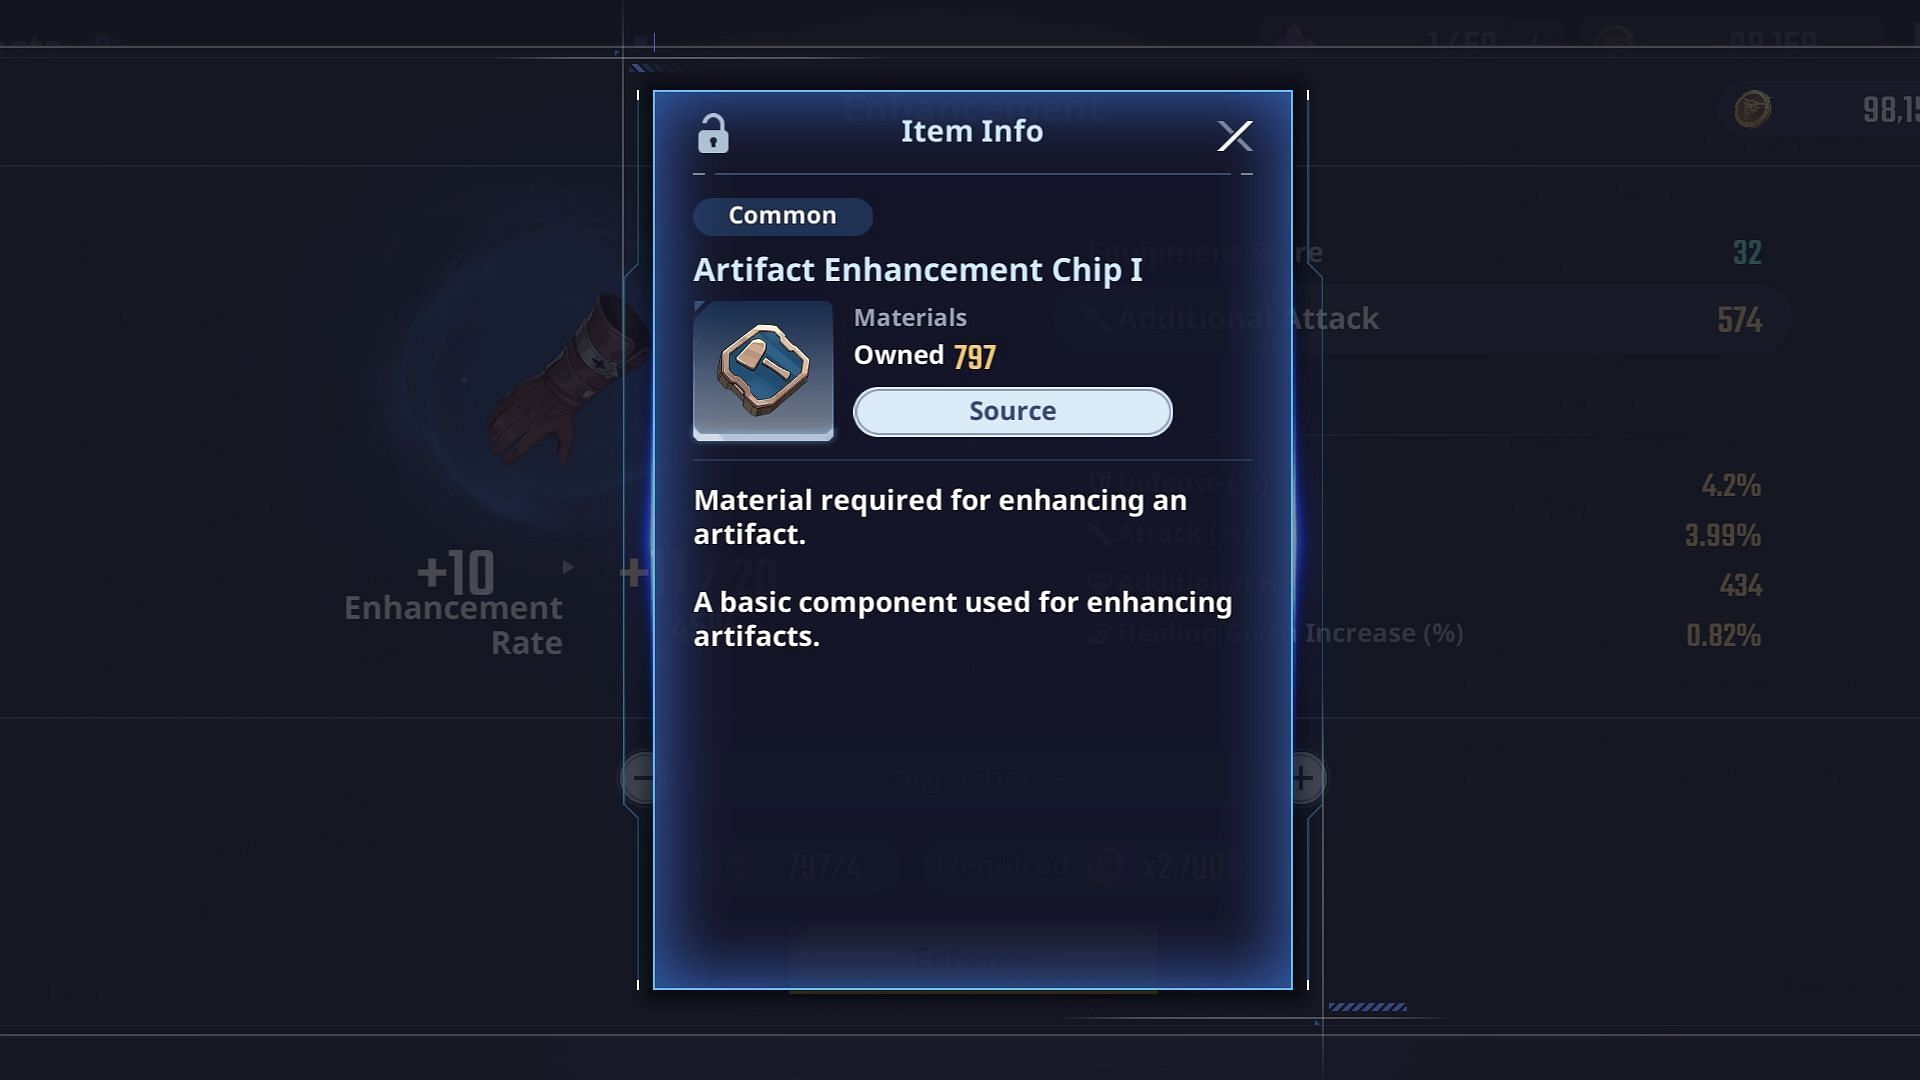 Artifact Enhancement Chips